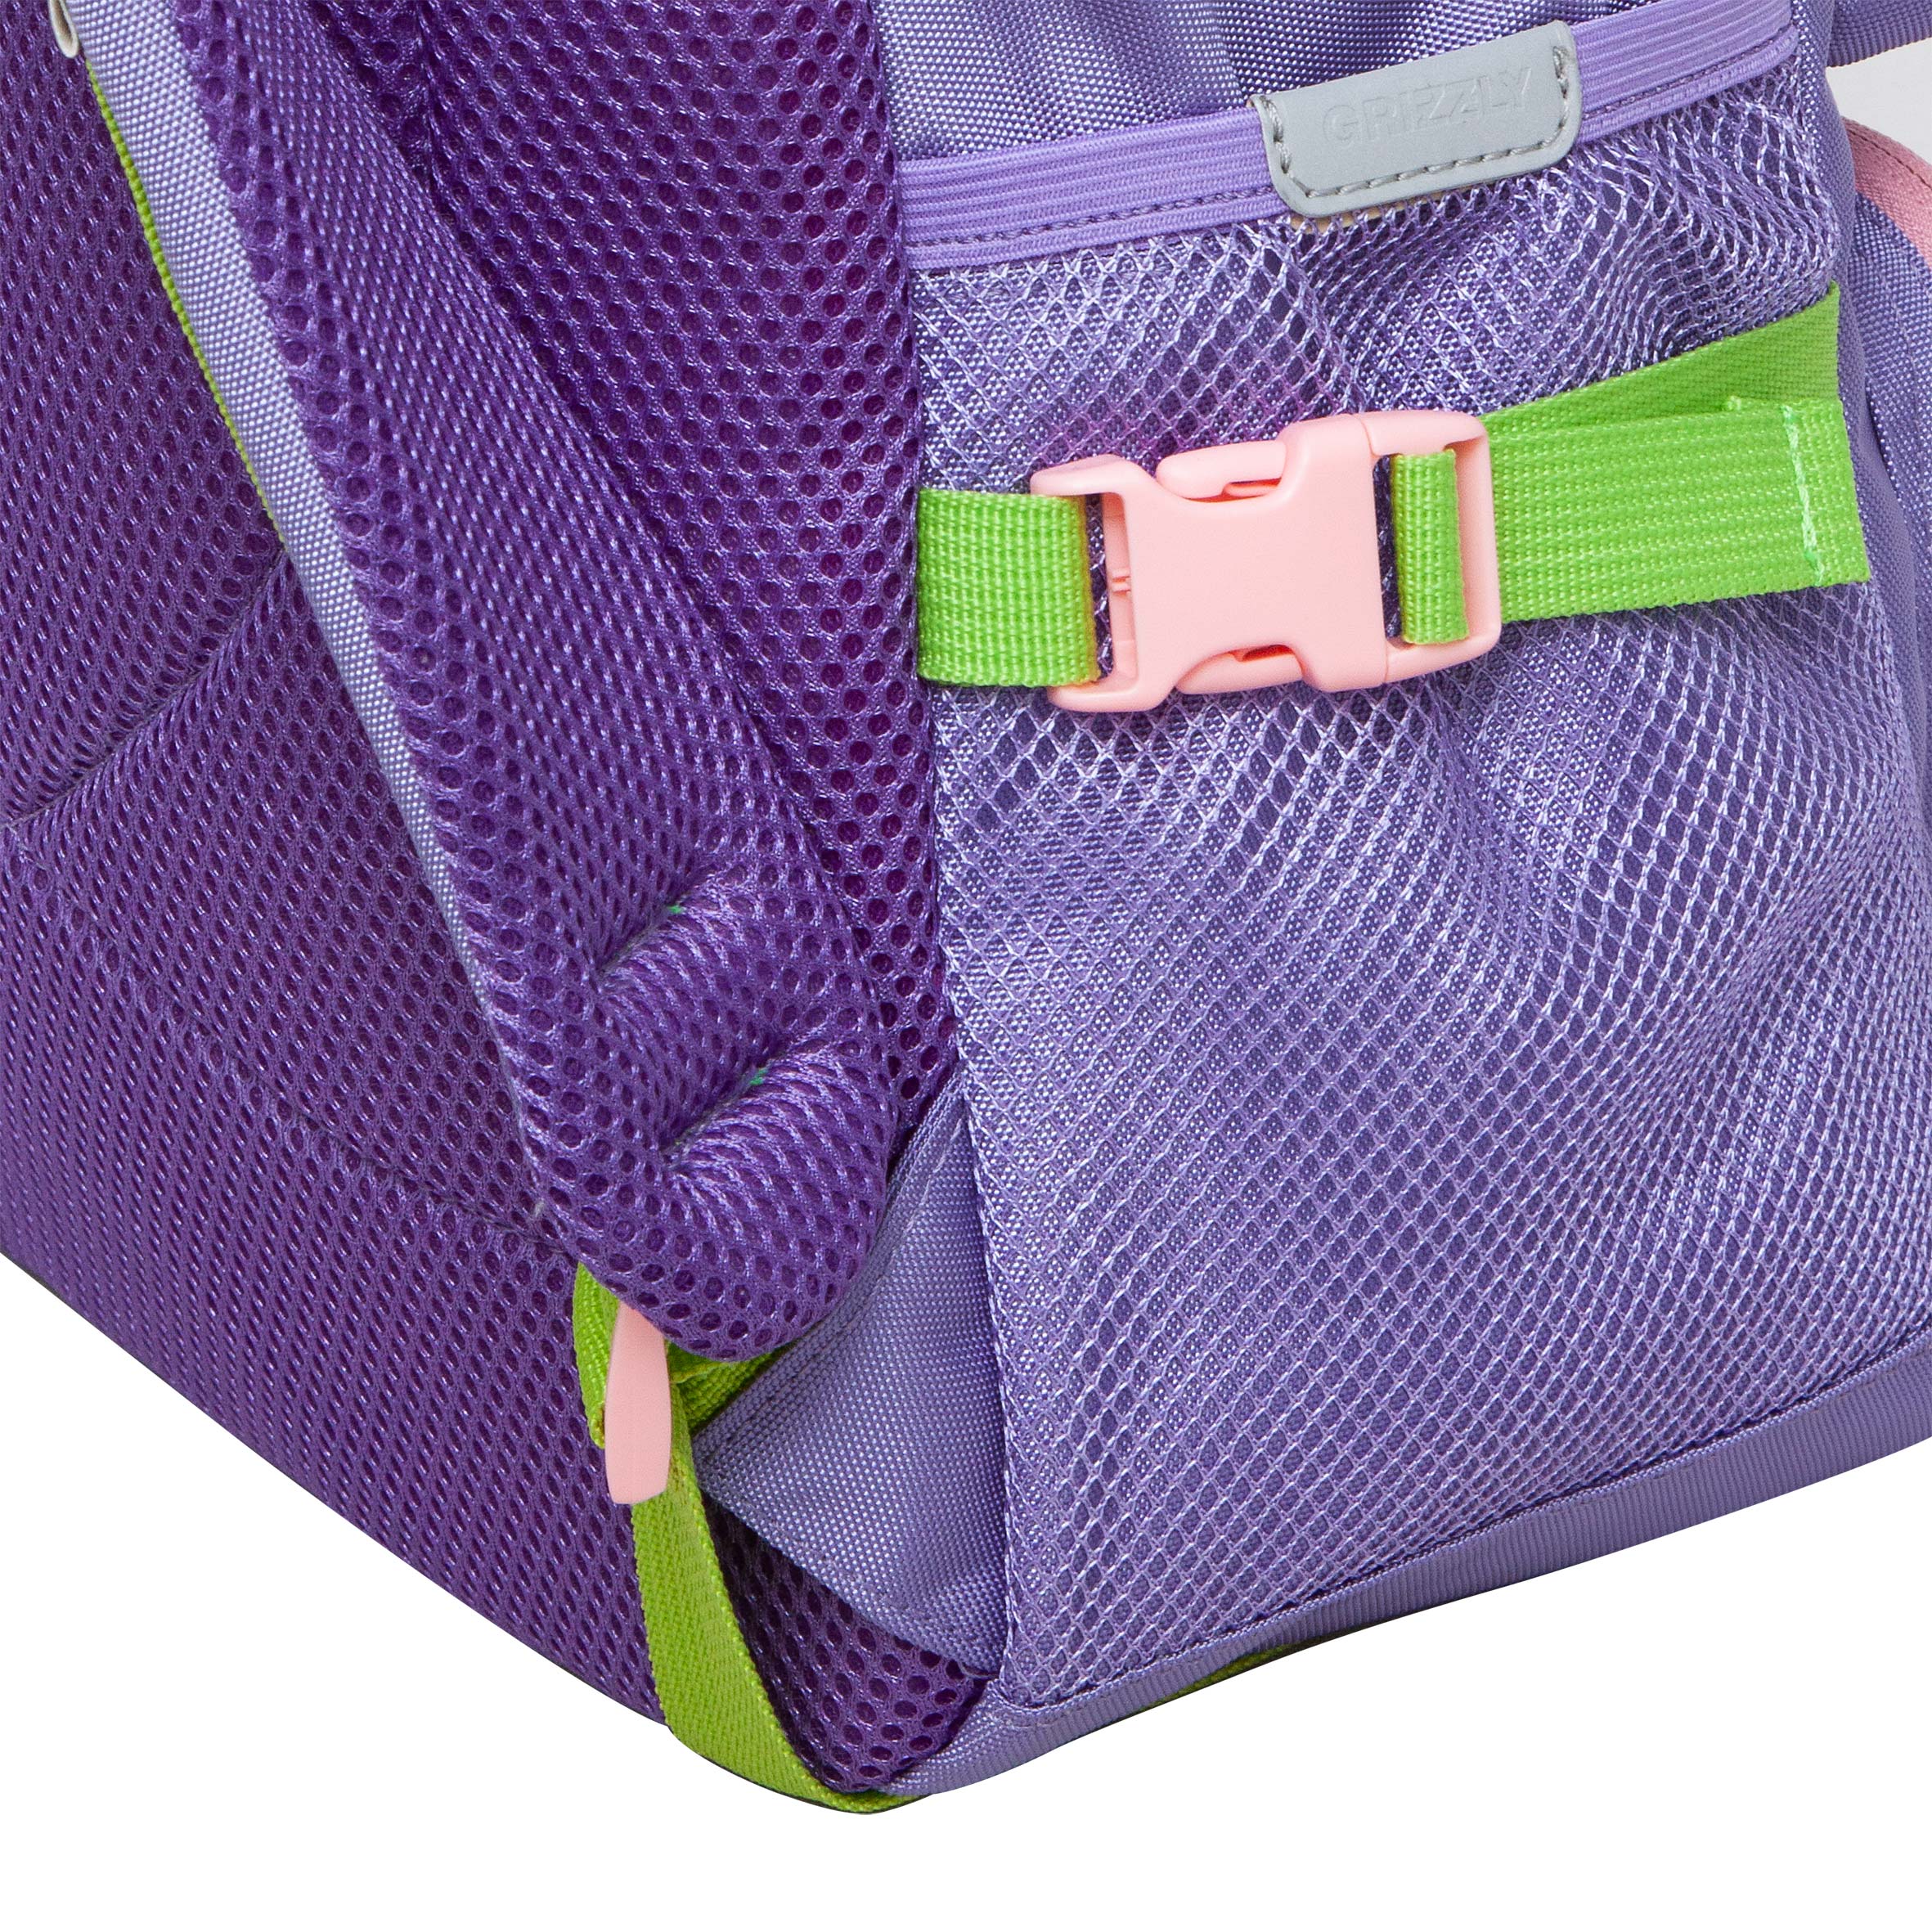 RG-465-1 рюкзак школьный